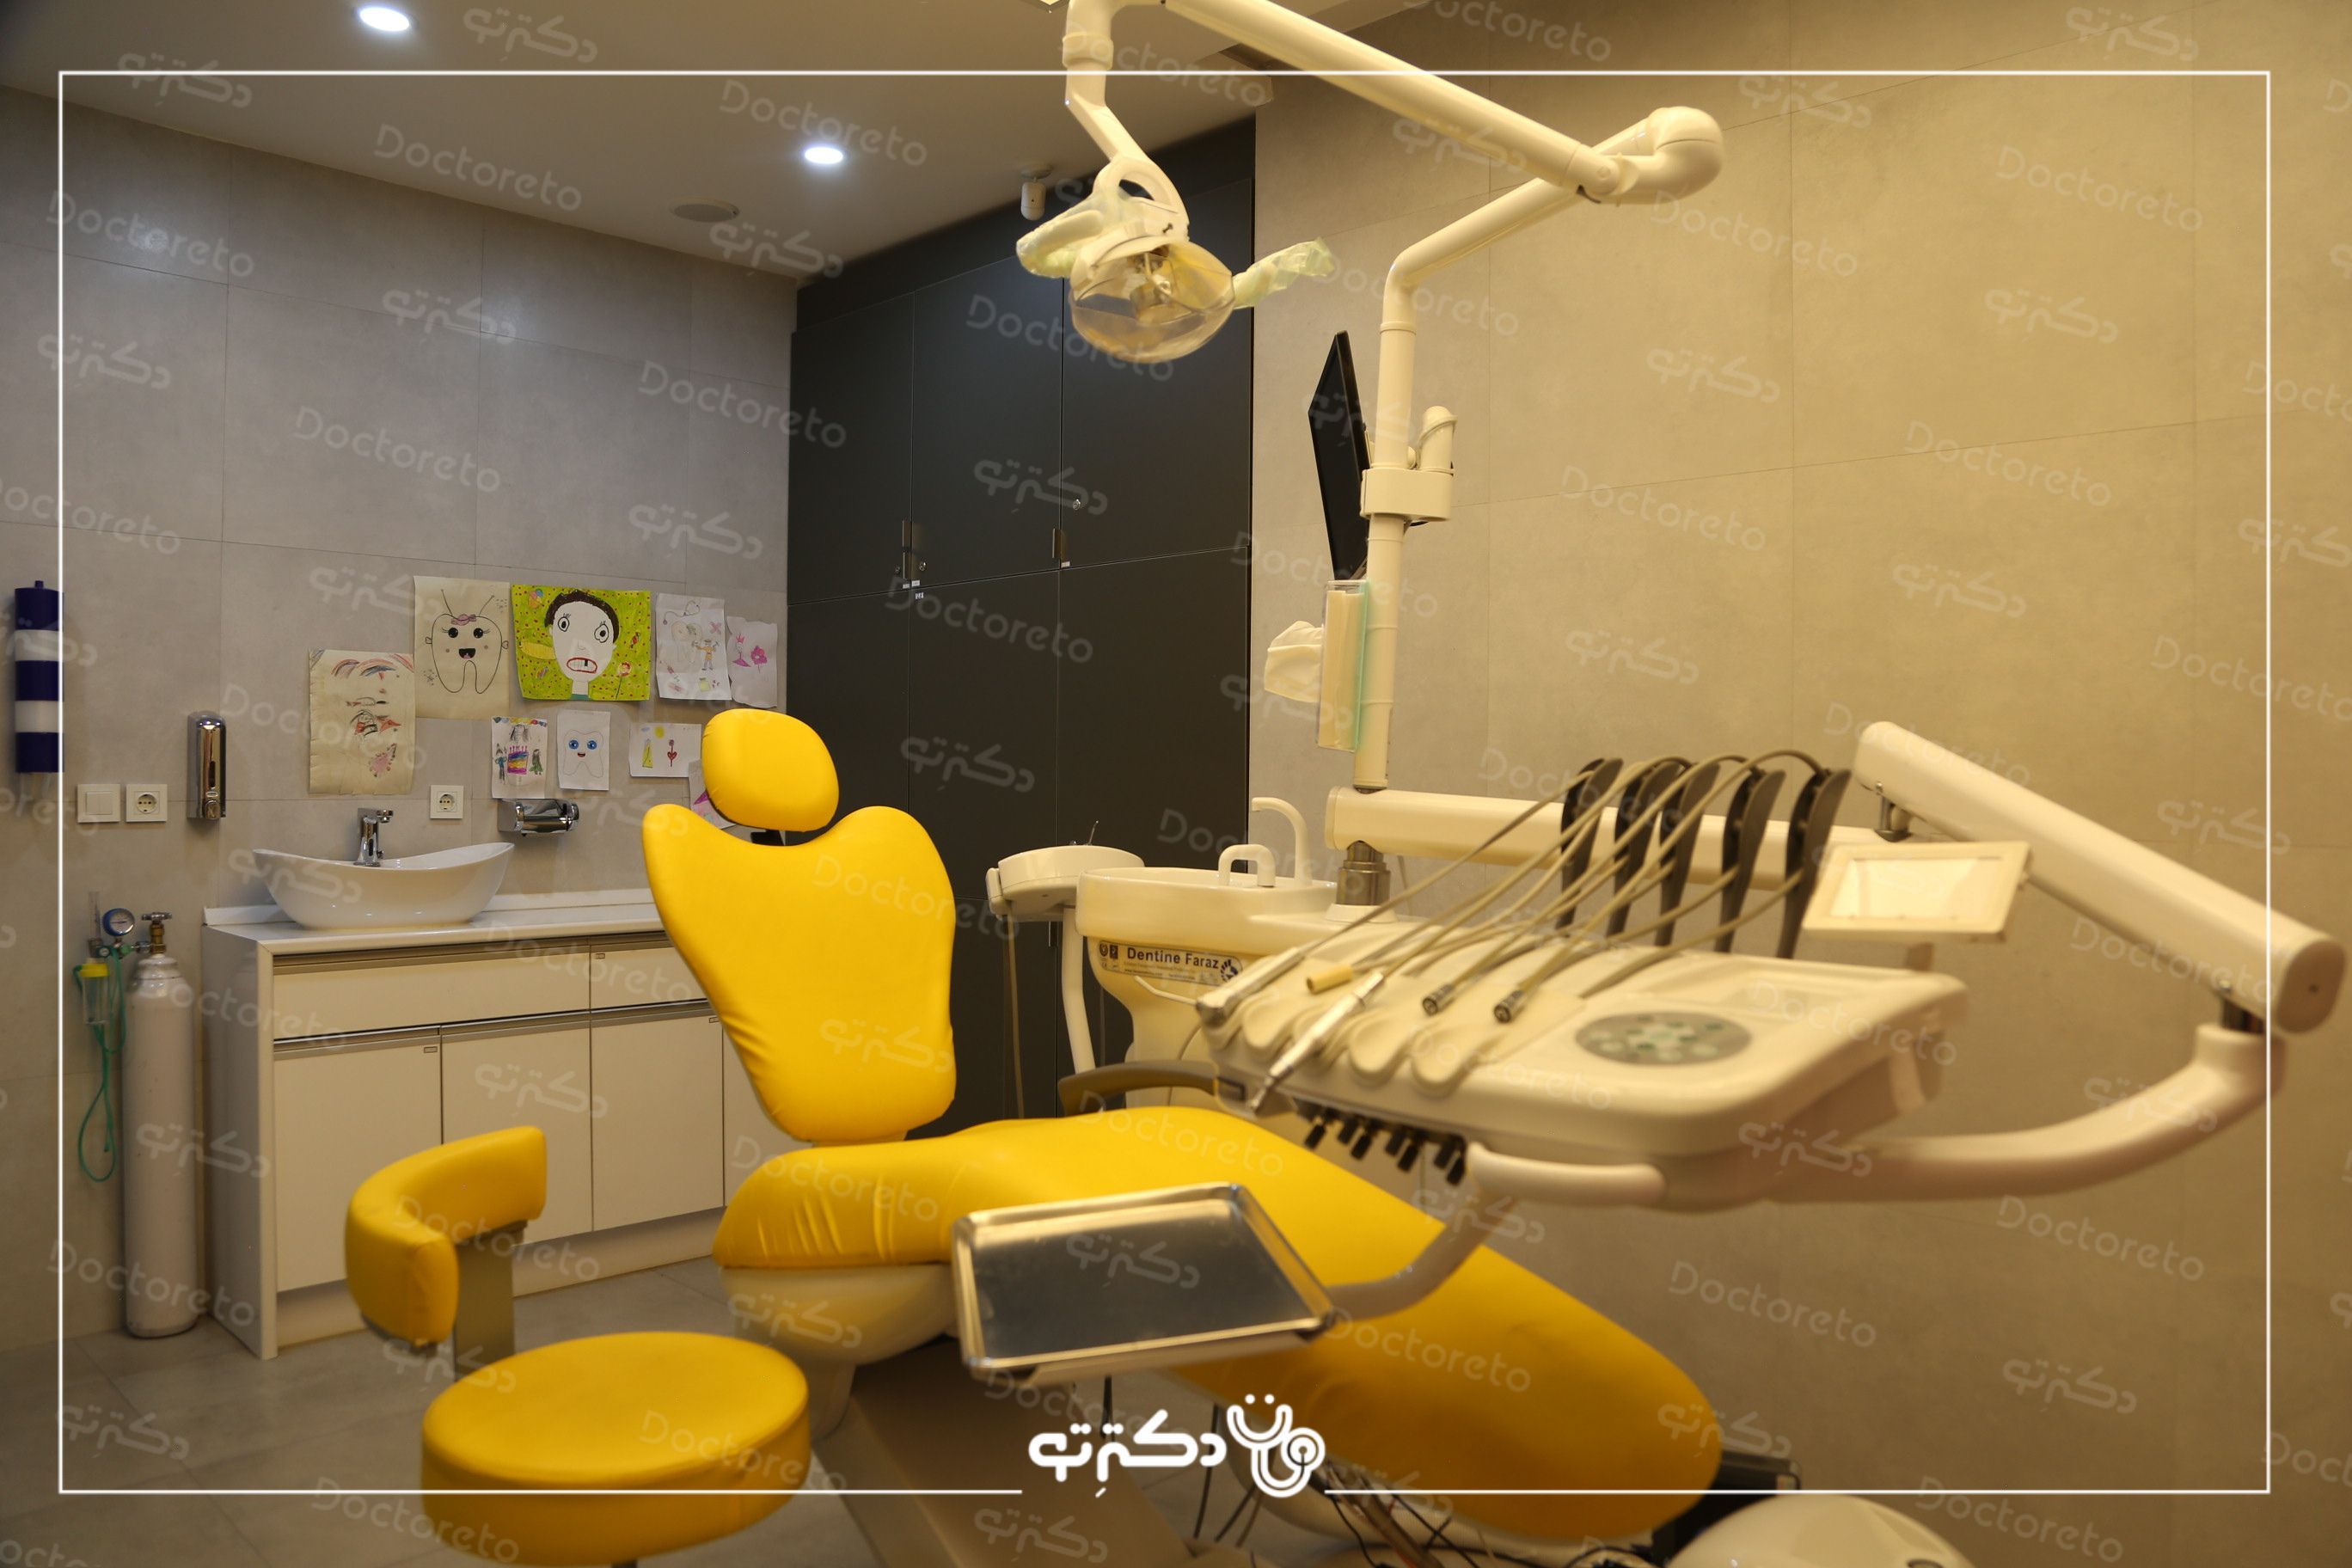 پر کردن دندان یک سطحی با کامپوزیت کره ای دکتر امیر خلیلیان در اصفهان 2